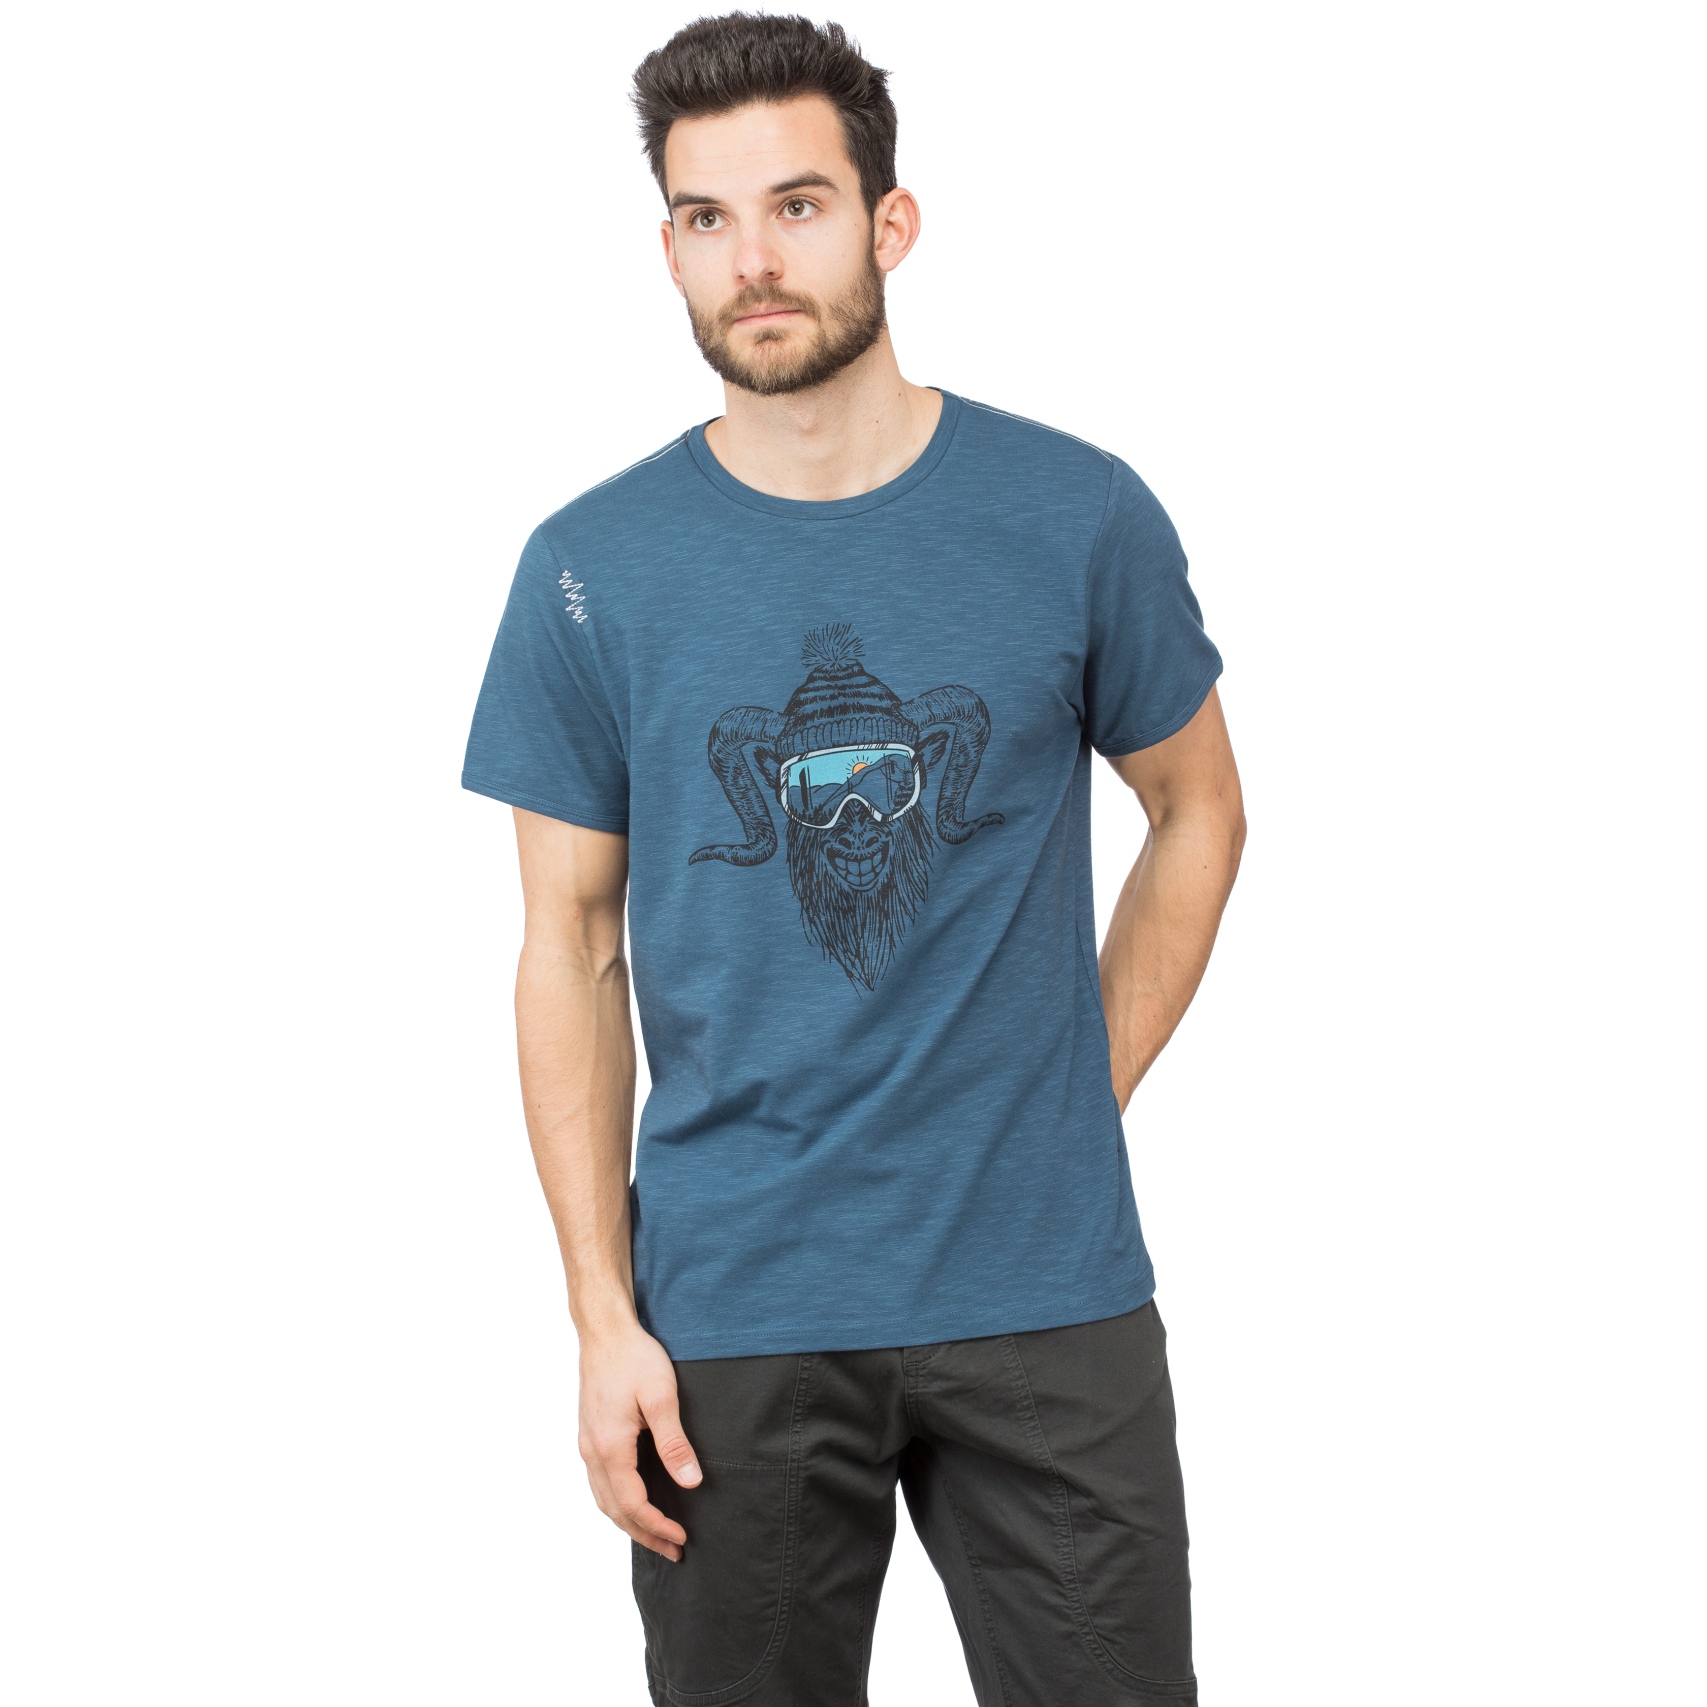 Productfoto van Chillaz Rock Hero Winter T-Shirt - dark blue